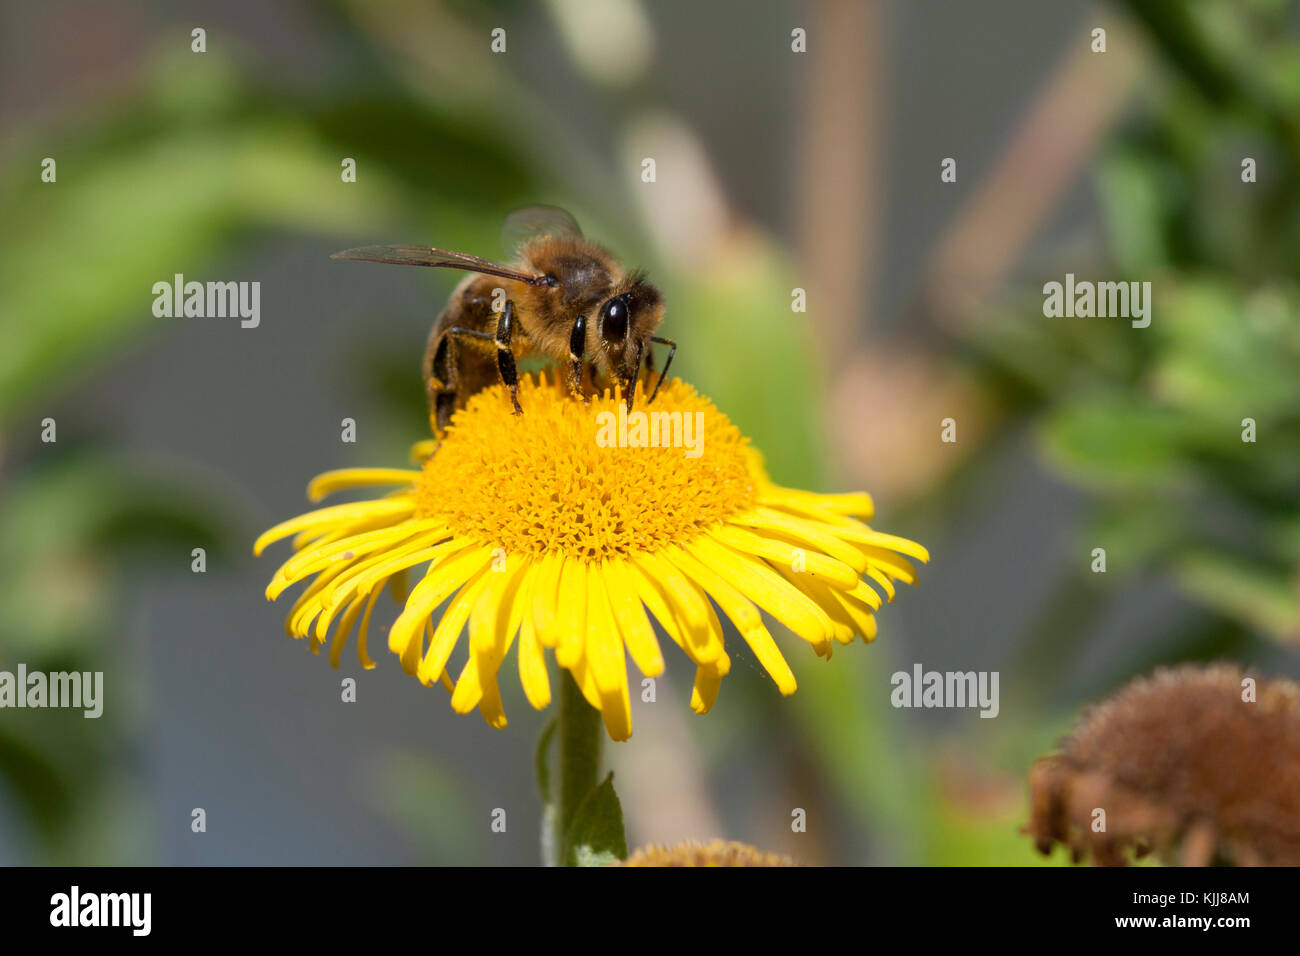 Western Honey Bee on Common Fleabane, UK. Summertime Stock Photo